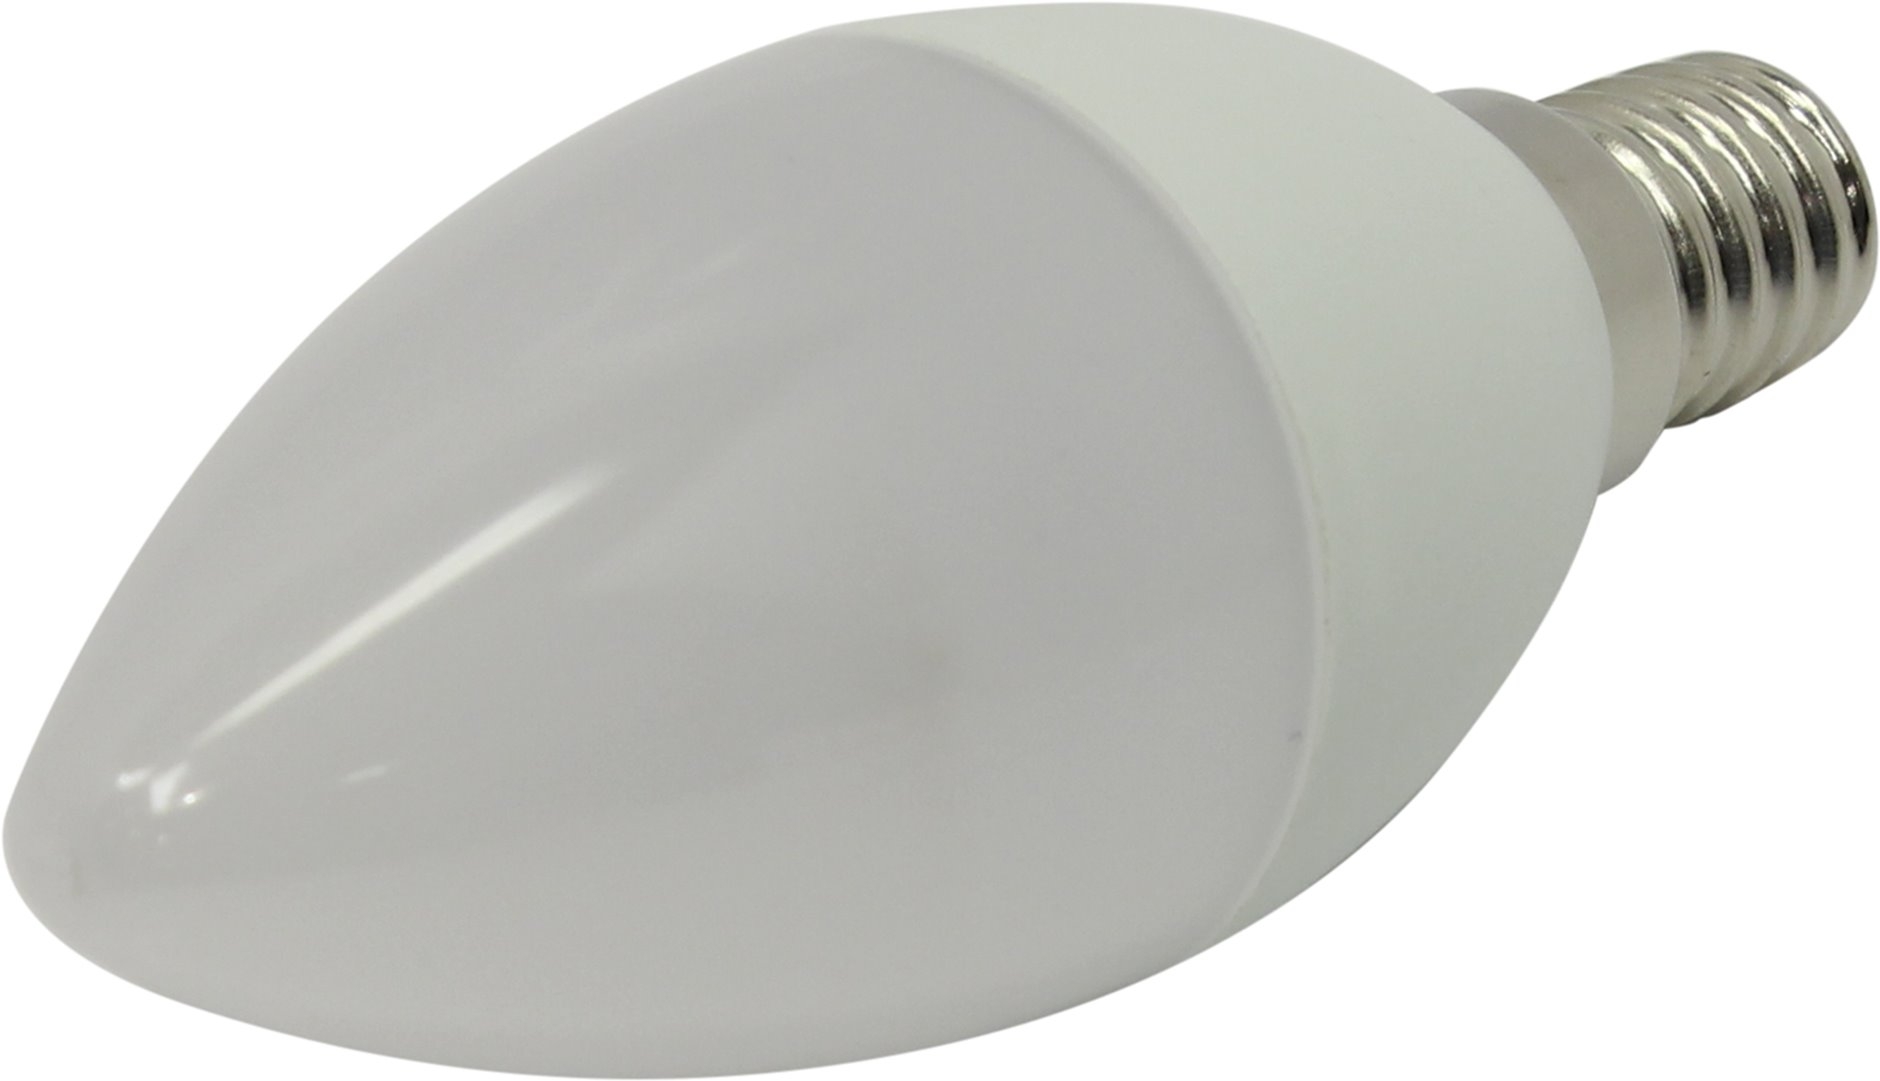 Лампа светодиодная ЭРА LED smd B35-6w-840-E14 ECO